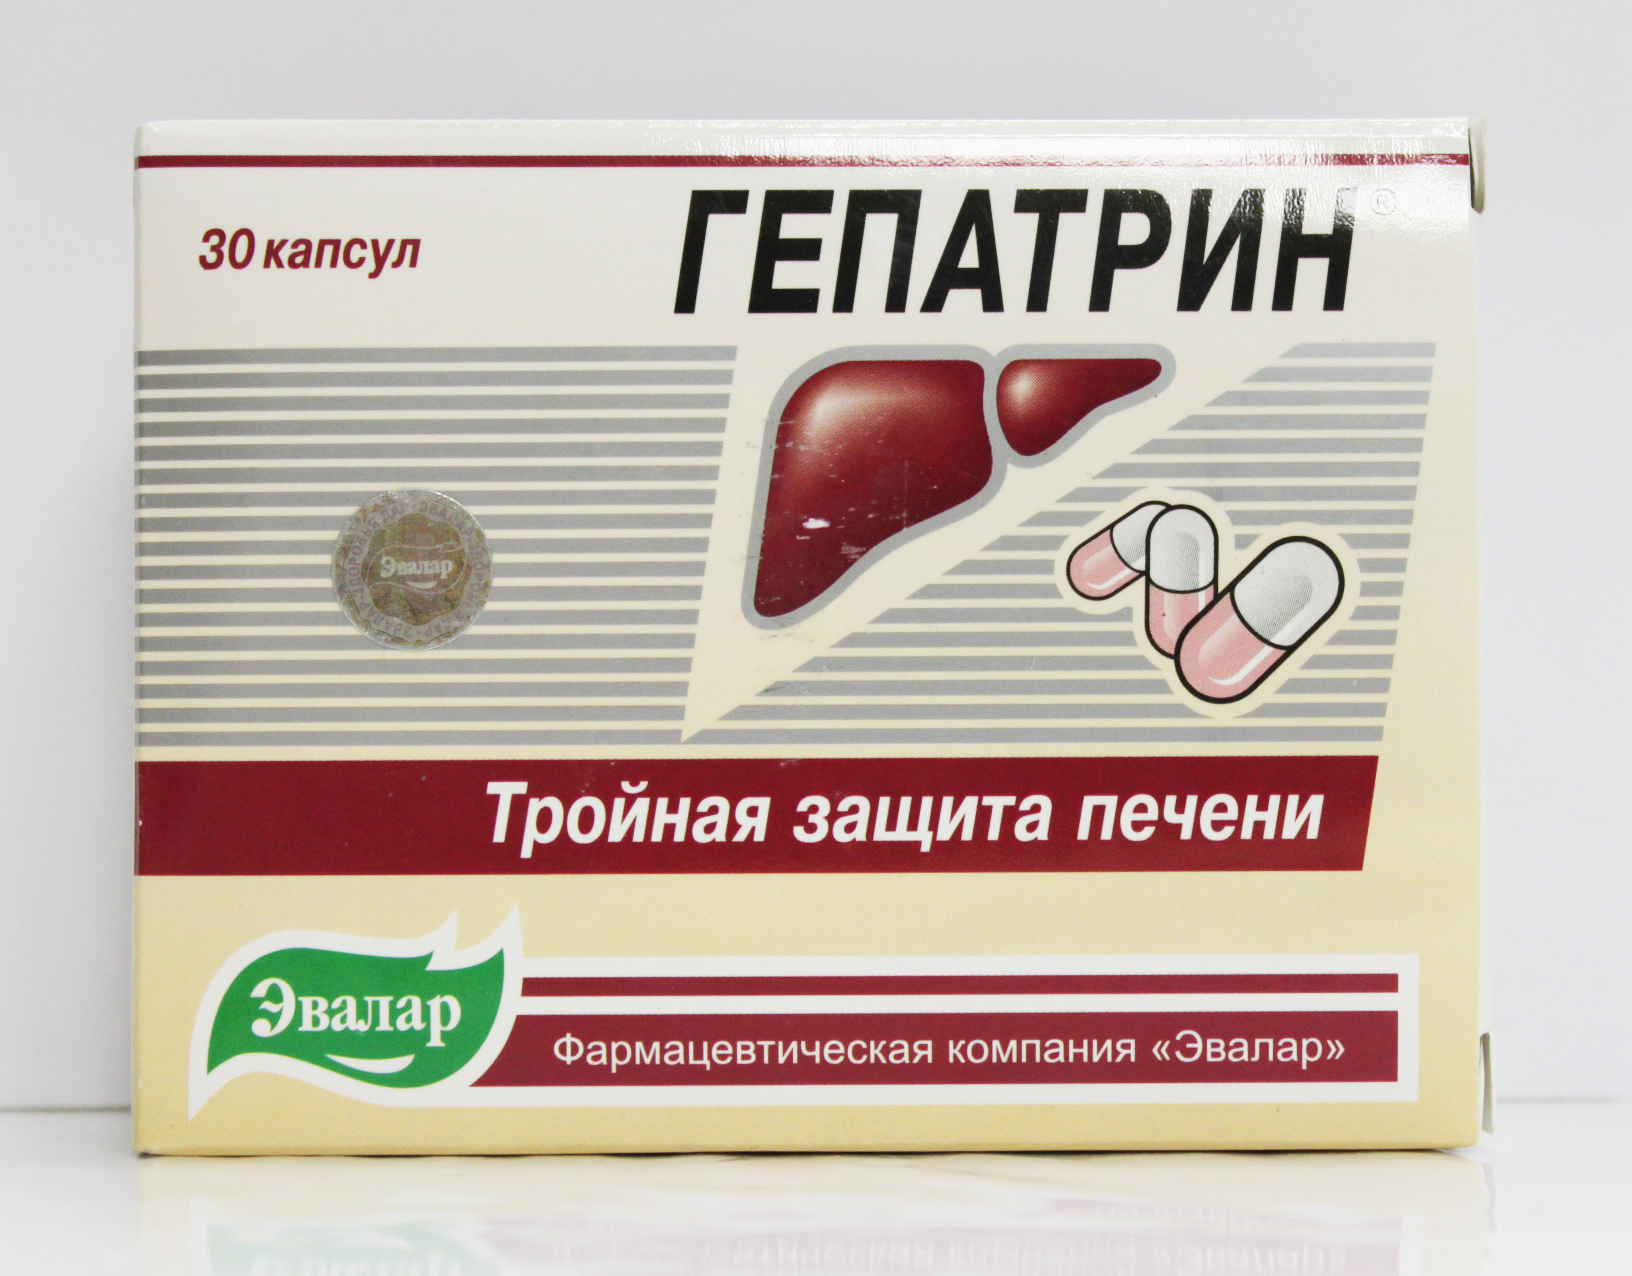 Лучший препарат восстанавливающий печень. Гепатрин Эвалар 30 капсул. Гепатрин 4602242002185. Гепатрин 400 мг. Таблетки от печени Гепатрин.